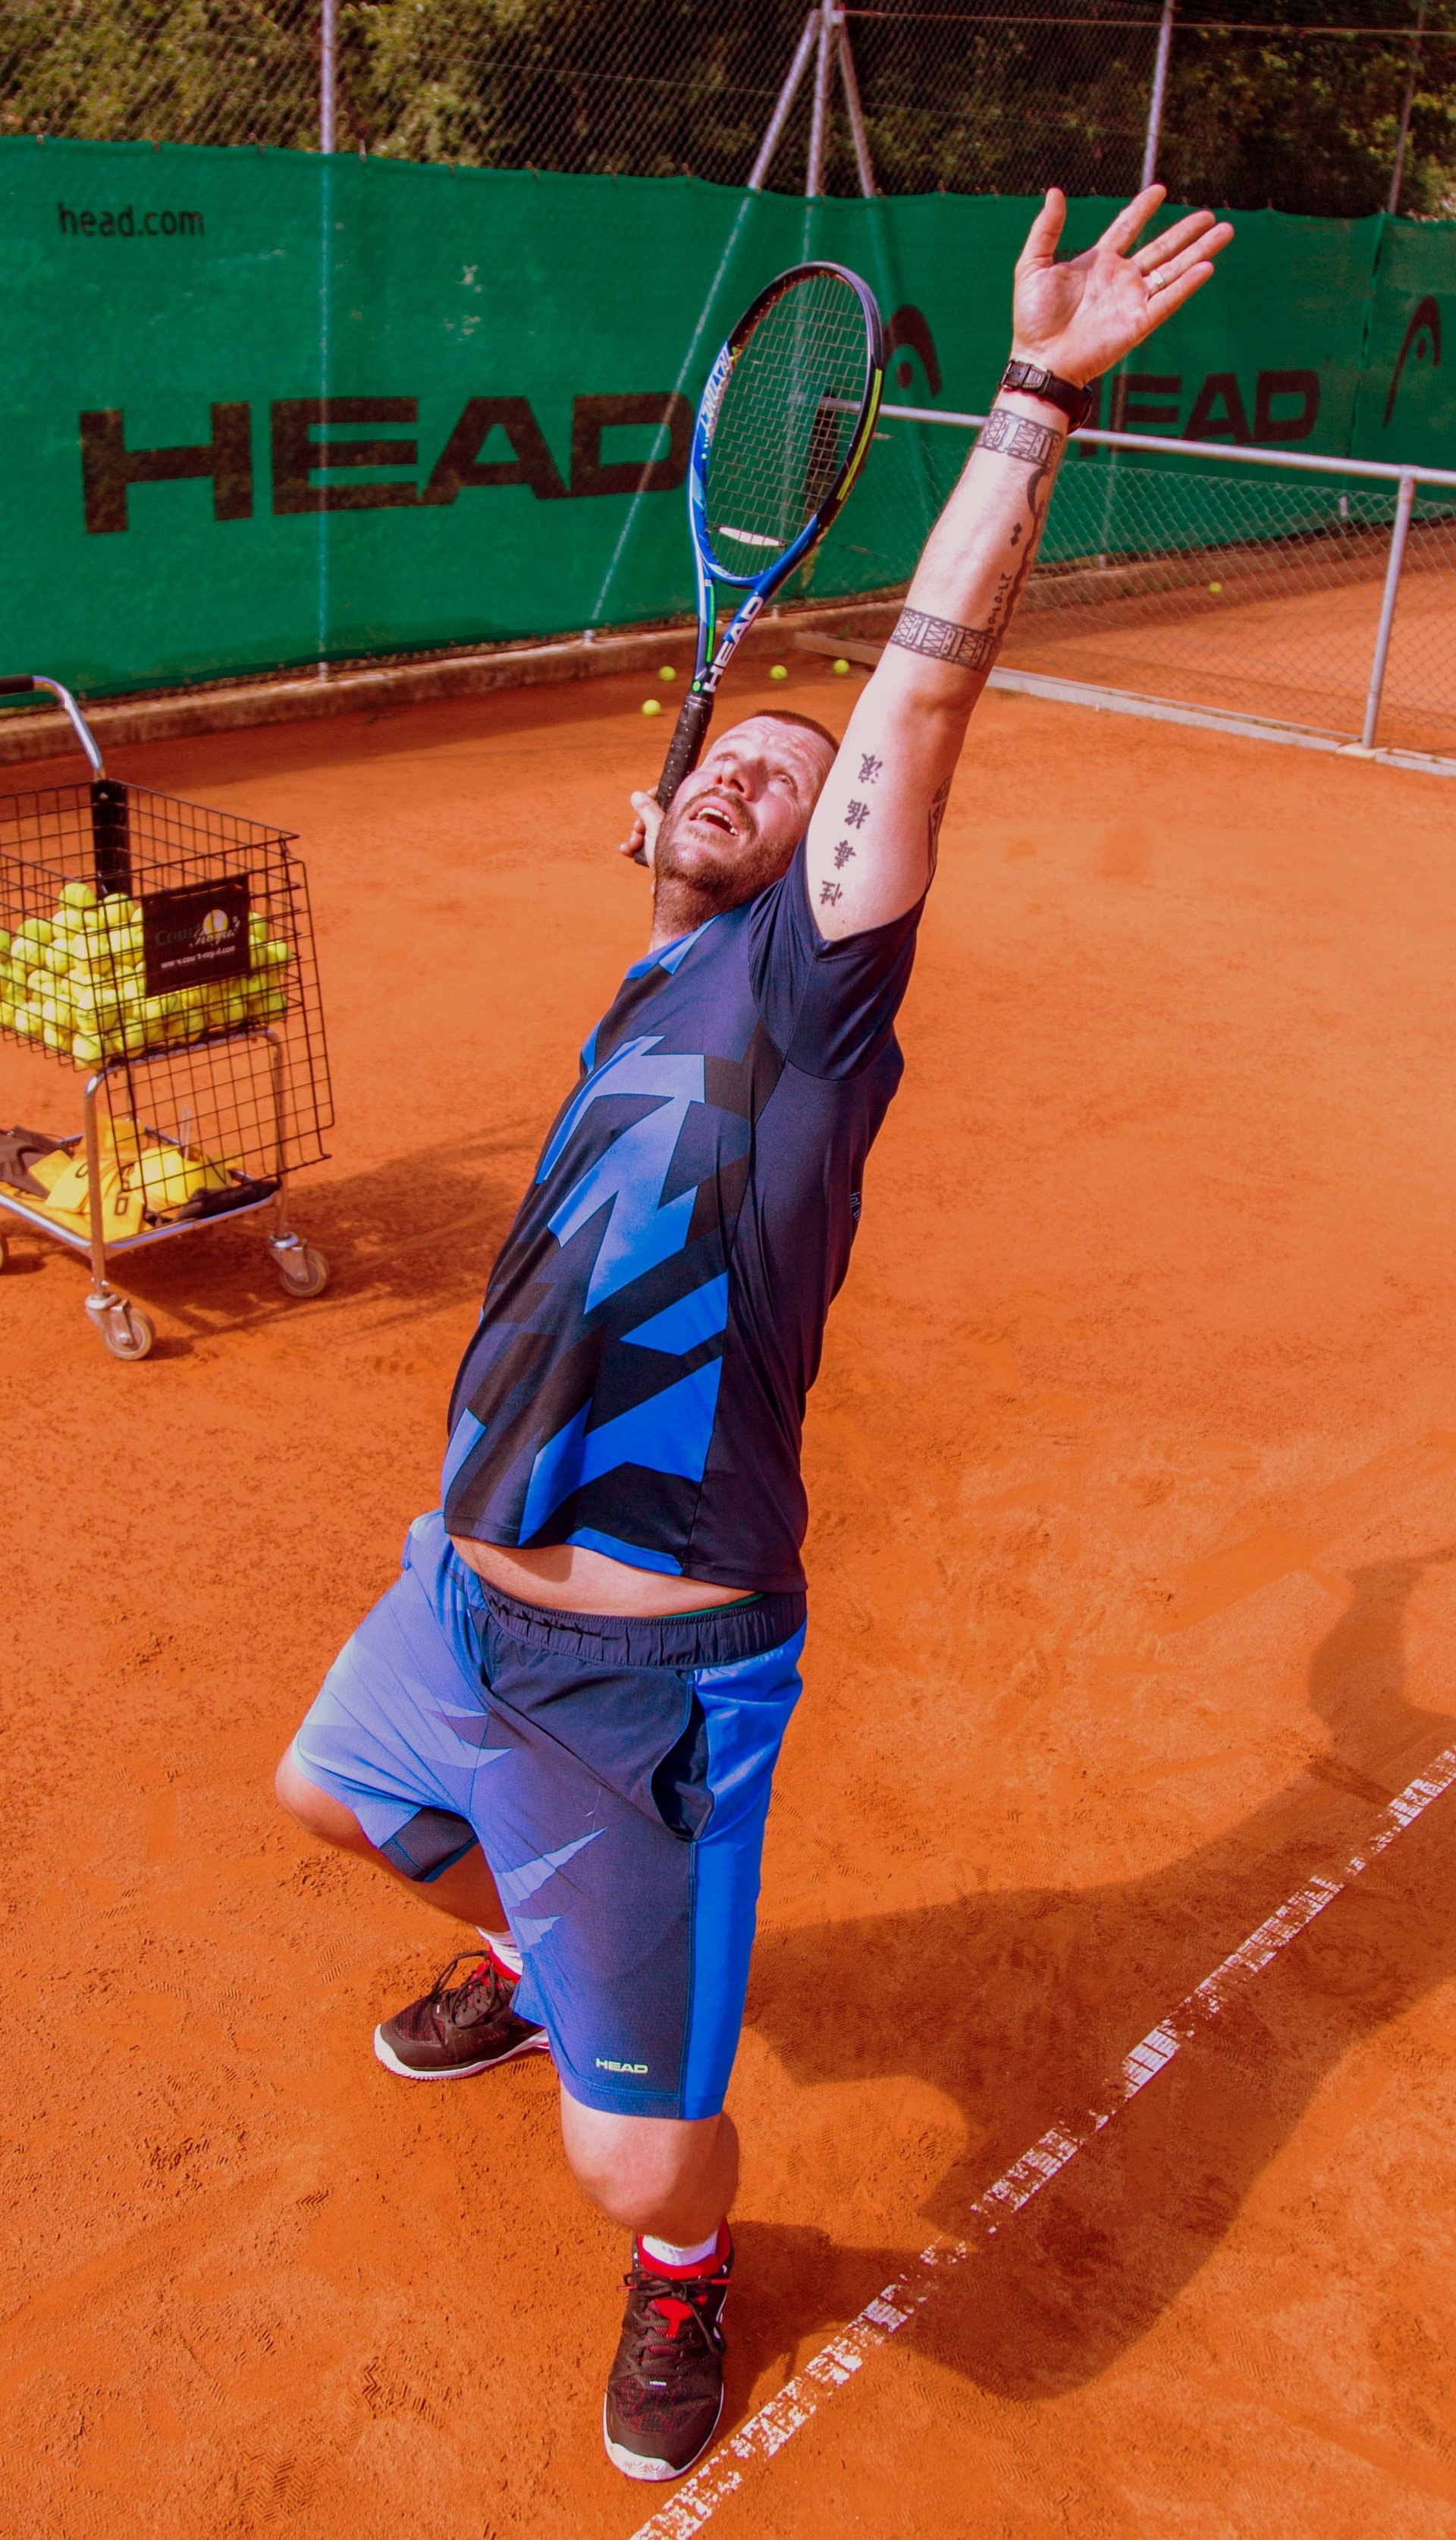 Daniel Huber istruttore di tennis e amministratore delegato del campo di tennis a Naturno durante l'allenamento al servizio.